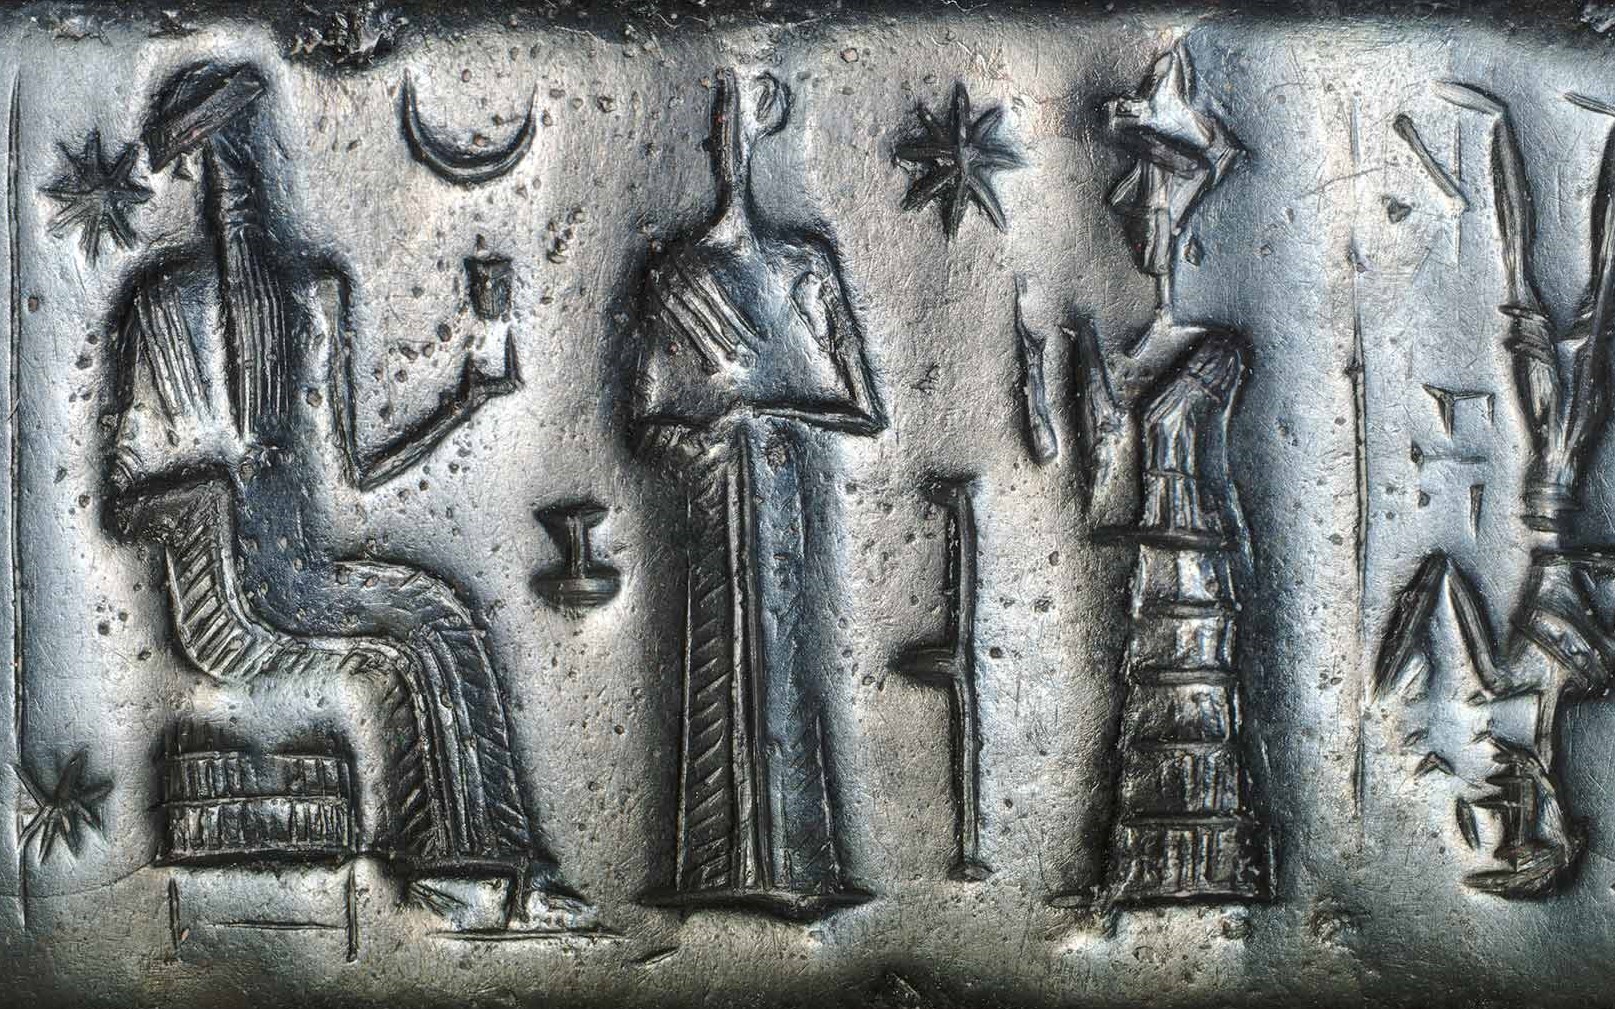 3g - Inanna's 8-pointed star, Nannar's Moon crescent, & Nabu's stylus symbols; Nannar, Ninsun, mixed-breed king